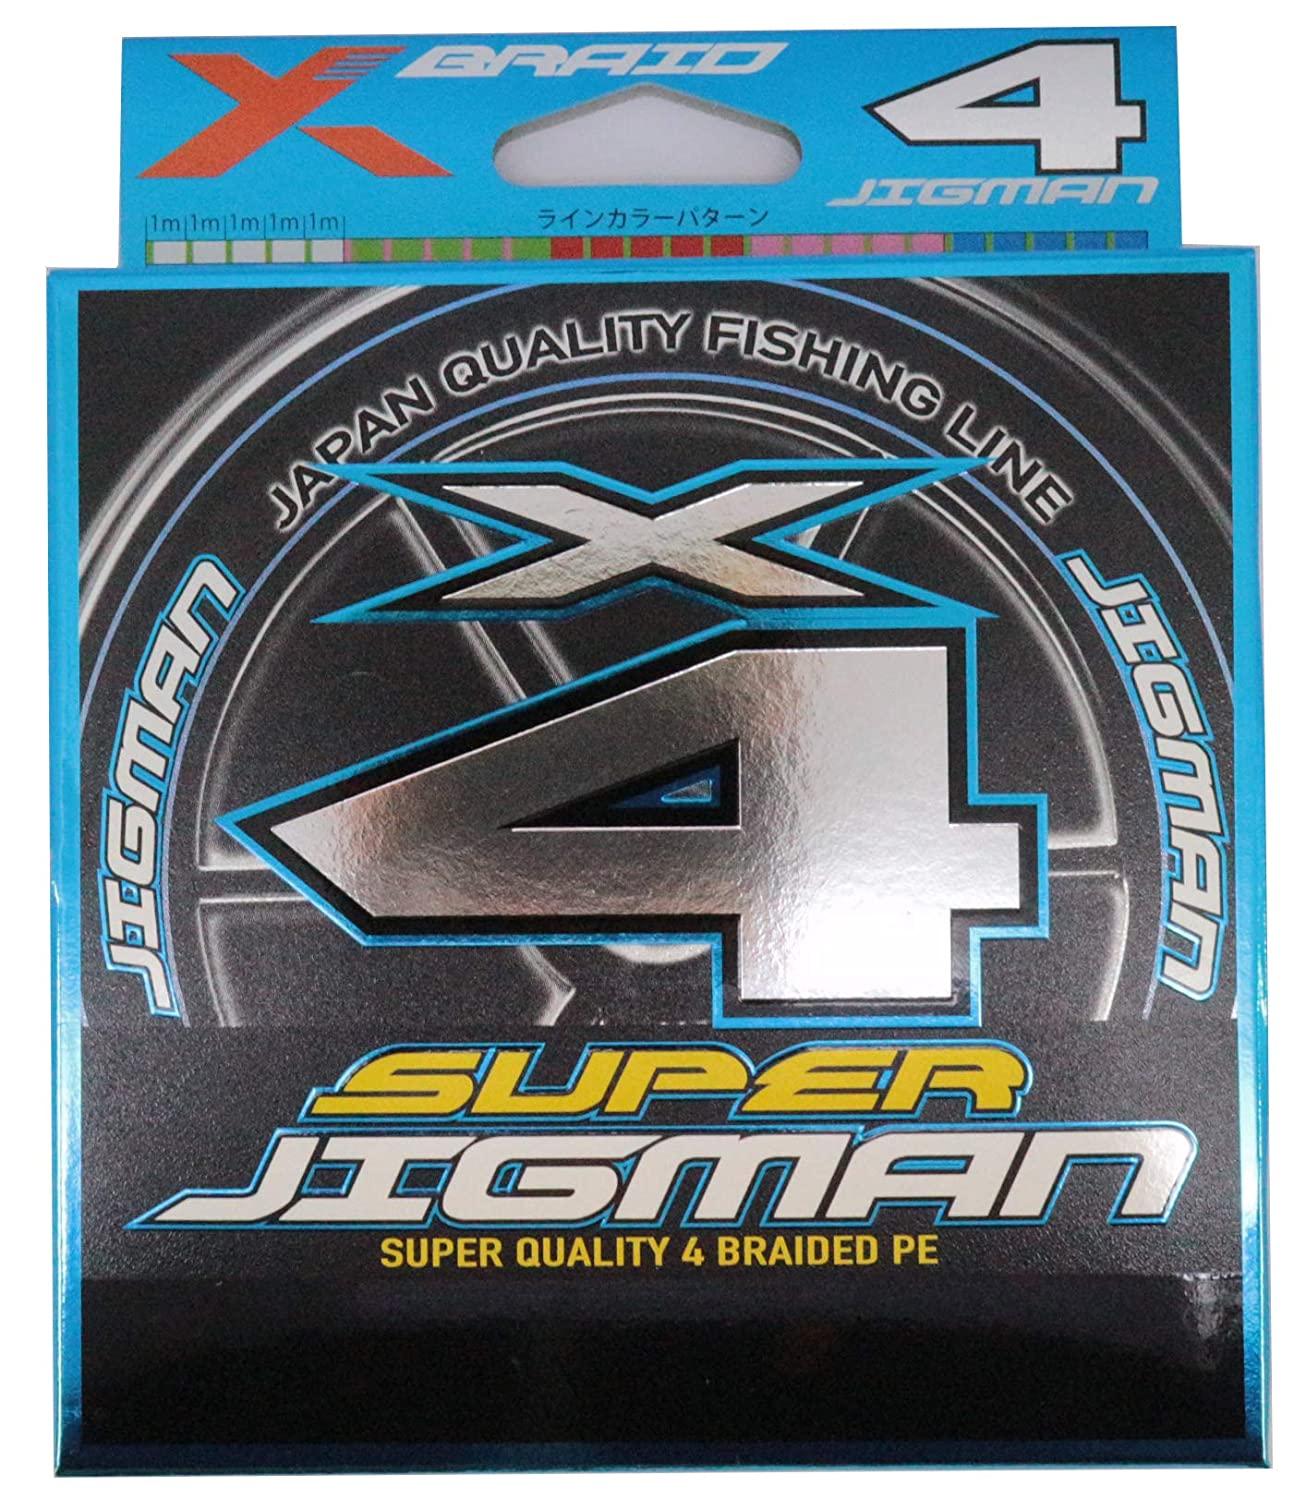  X-BRAID SUPER JIGMAN X4 200m 0.6 12lb